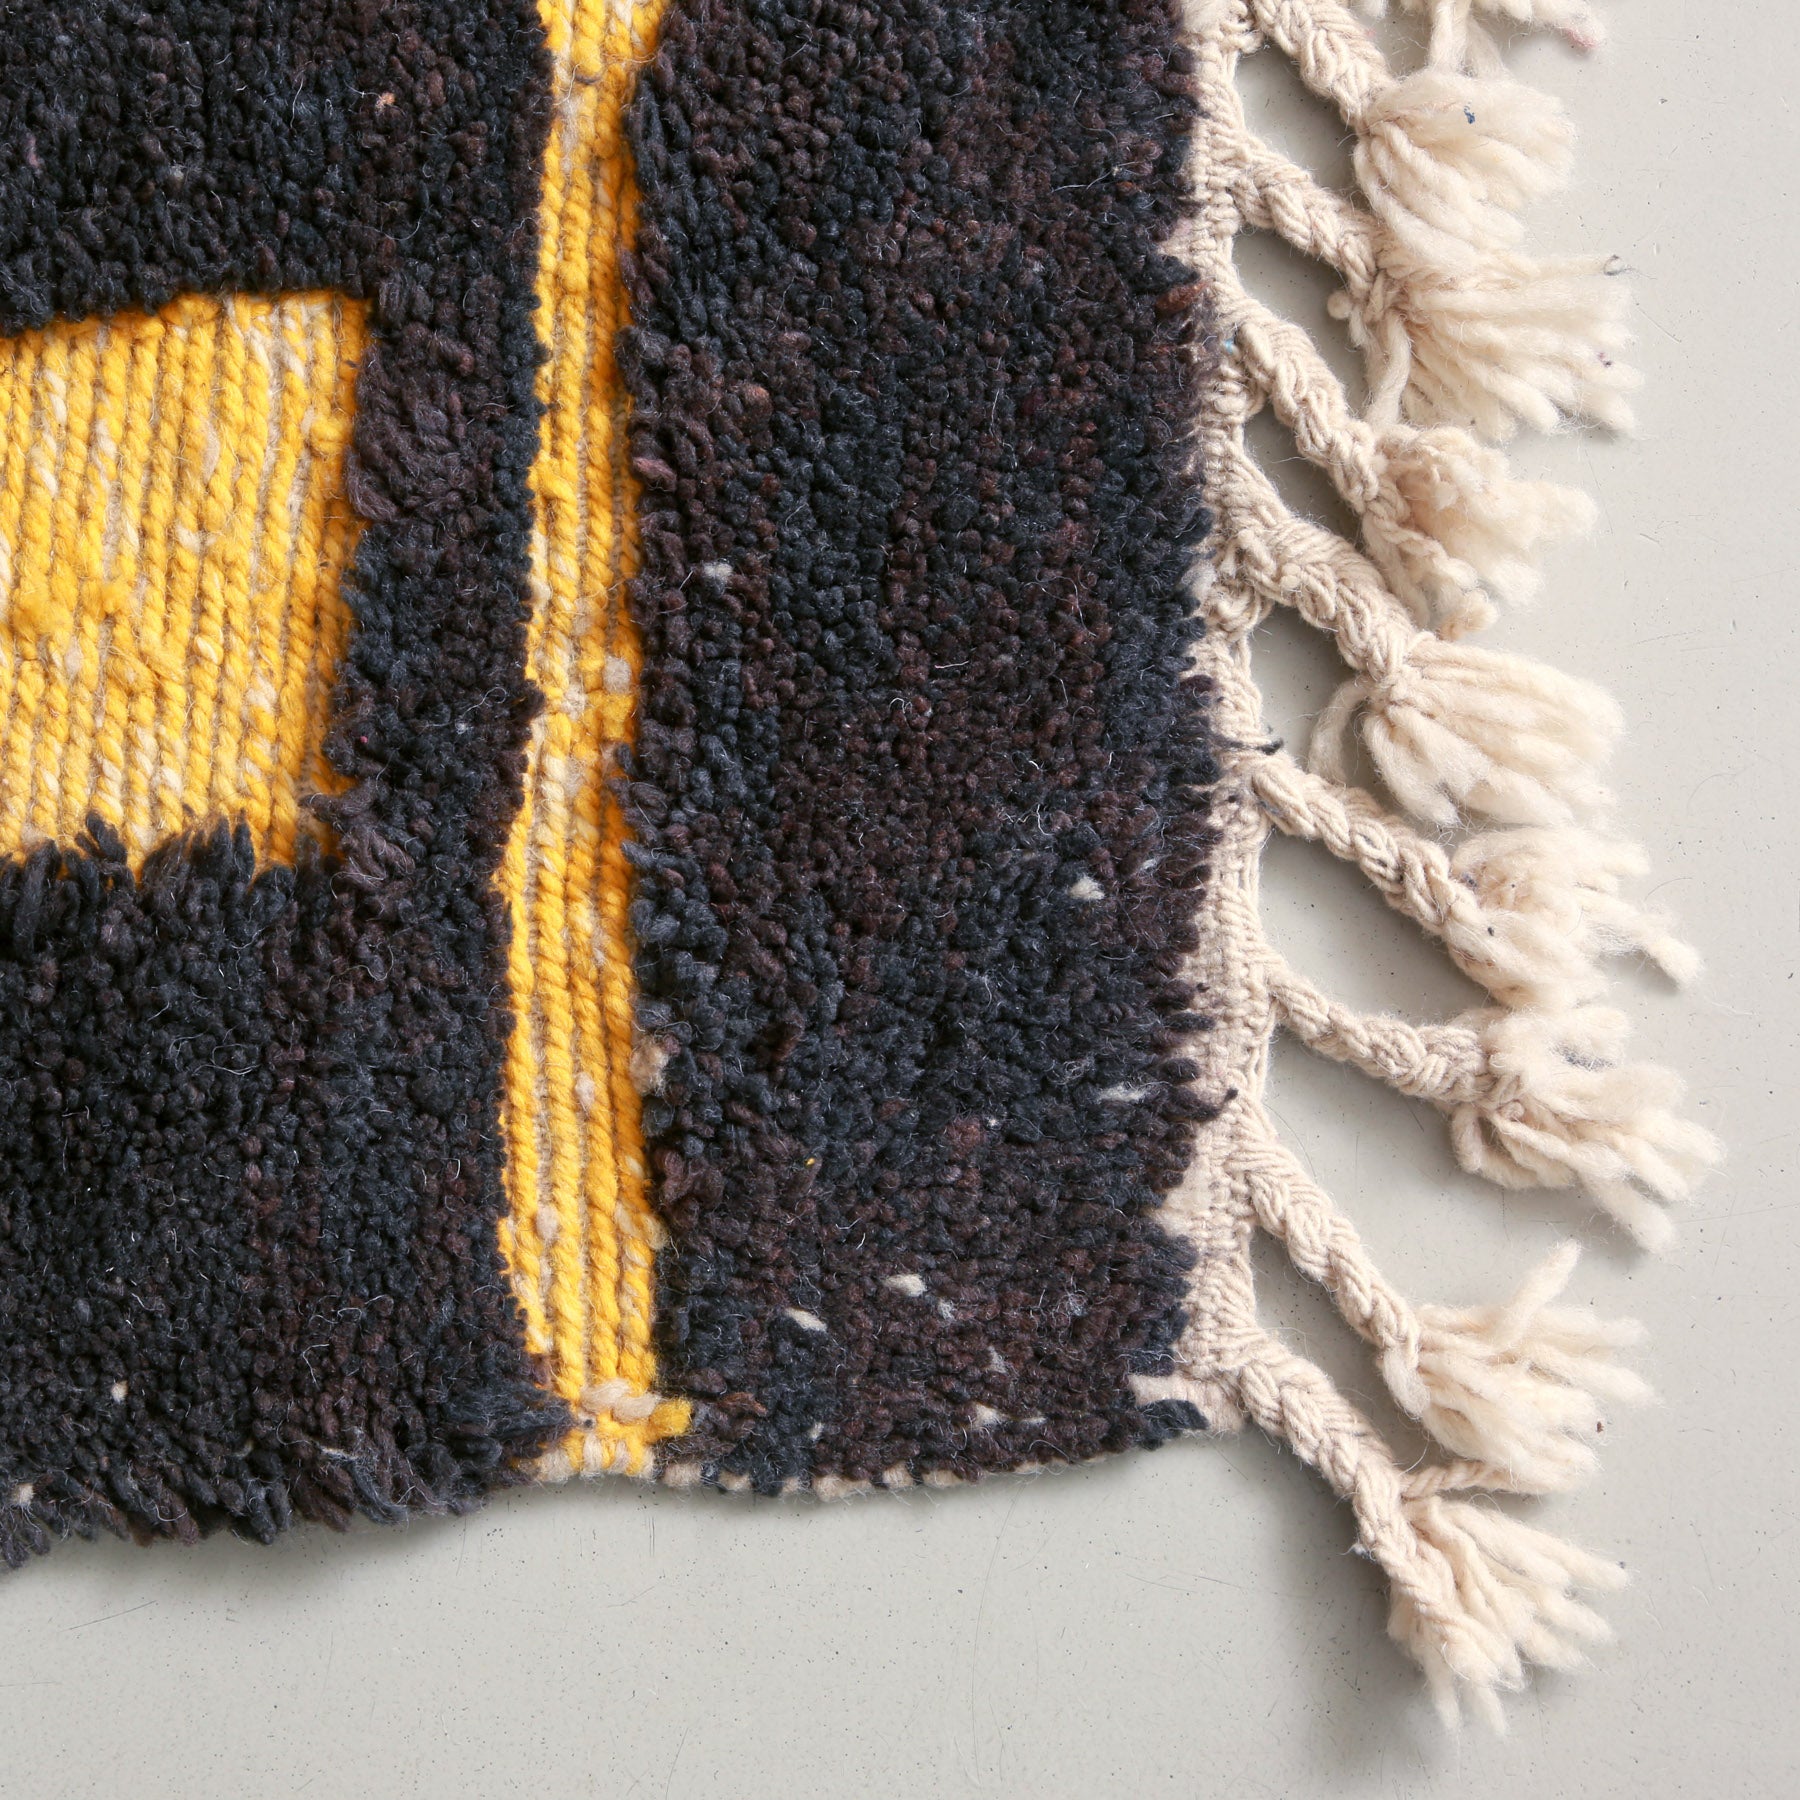 dettaglio dei un angolo con lana annodata dalle sfumature gruigio scure e marrone con delle parti in lana intrecciata guialla di un tappeto marocchino beni ourain realizzato a mano